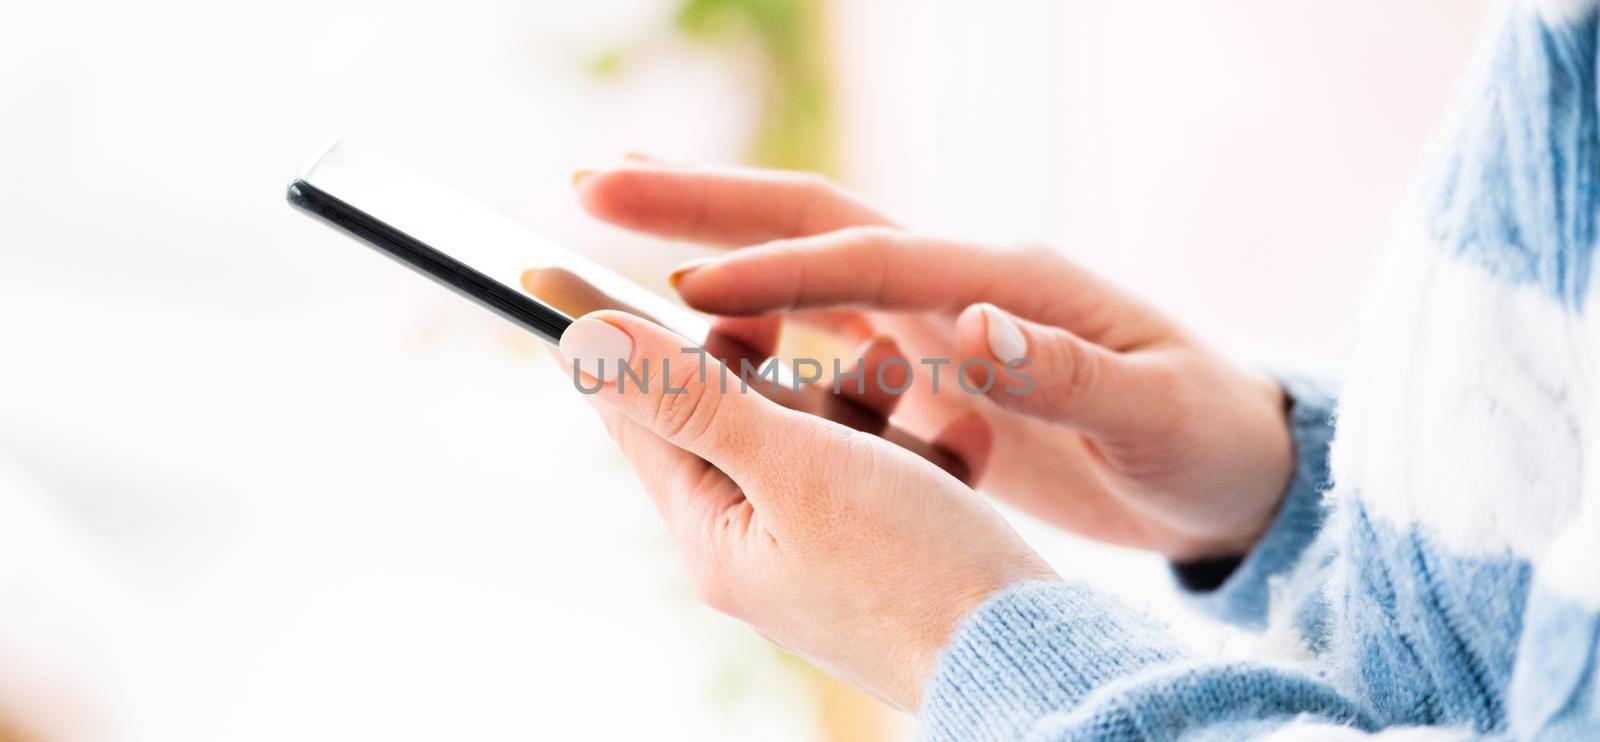 Female hands using phone by GekaSkr